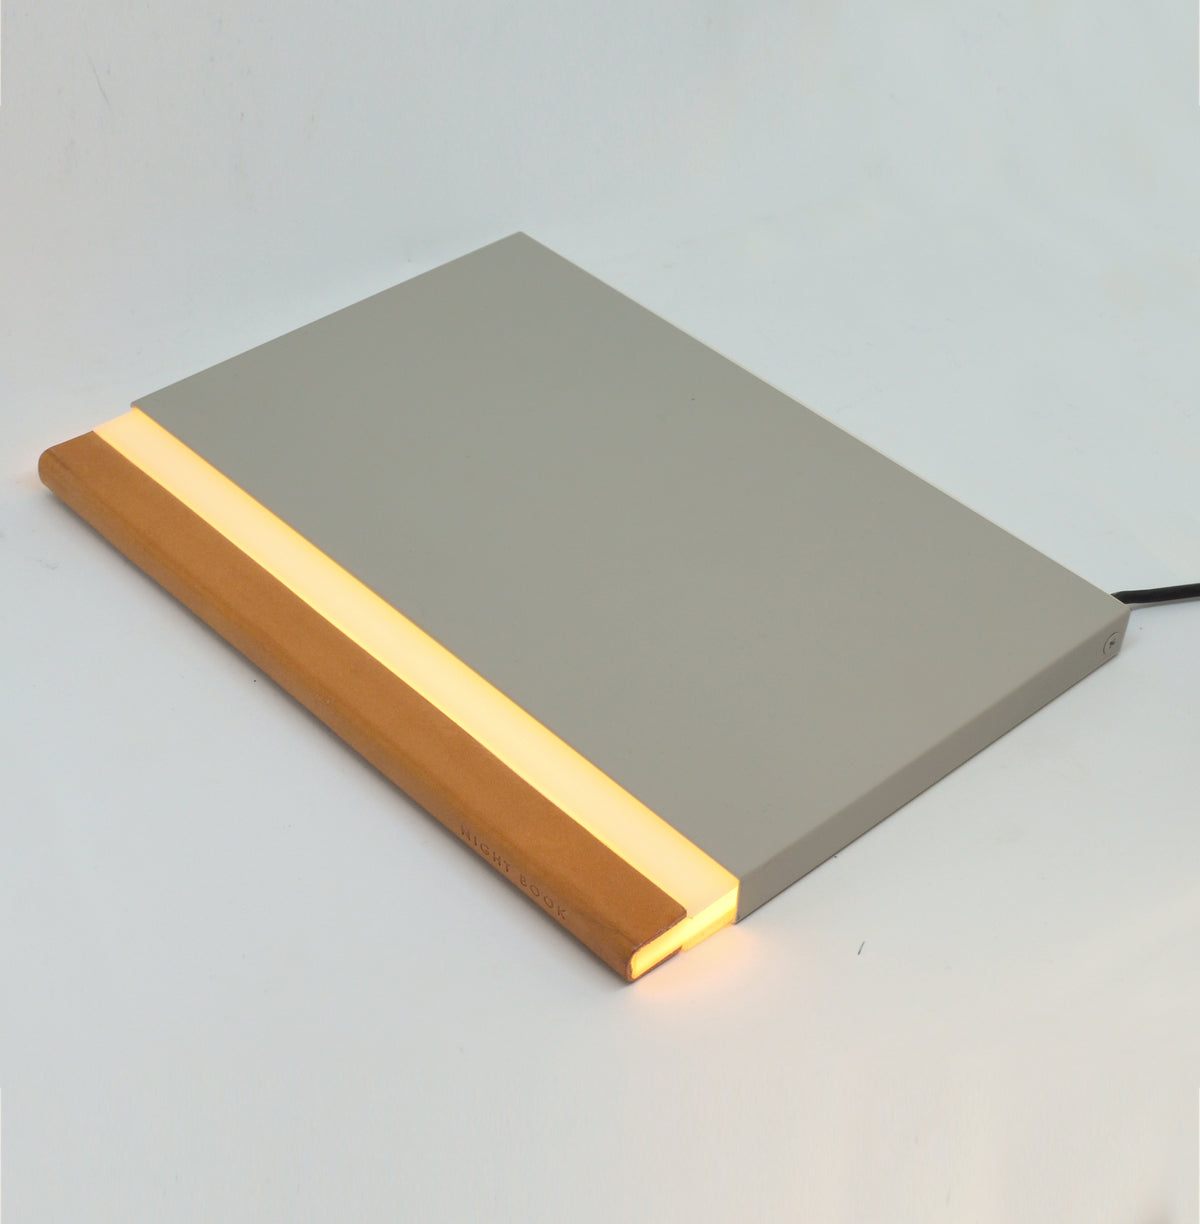 Akii, Akii Nightbook LED Book Light, Table / Task,